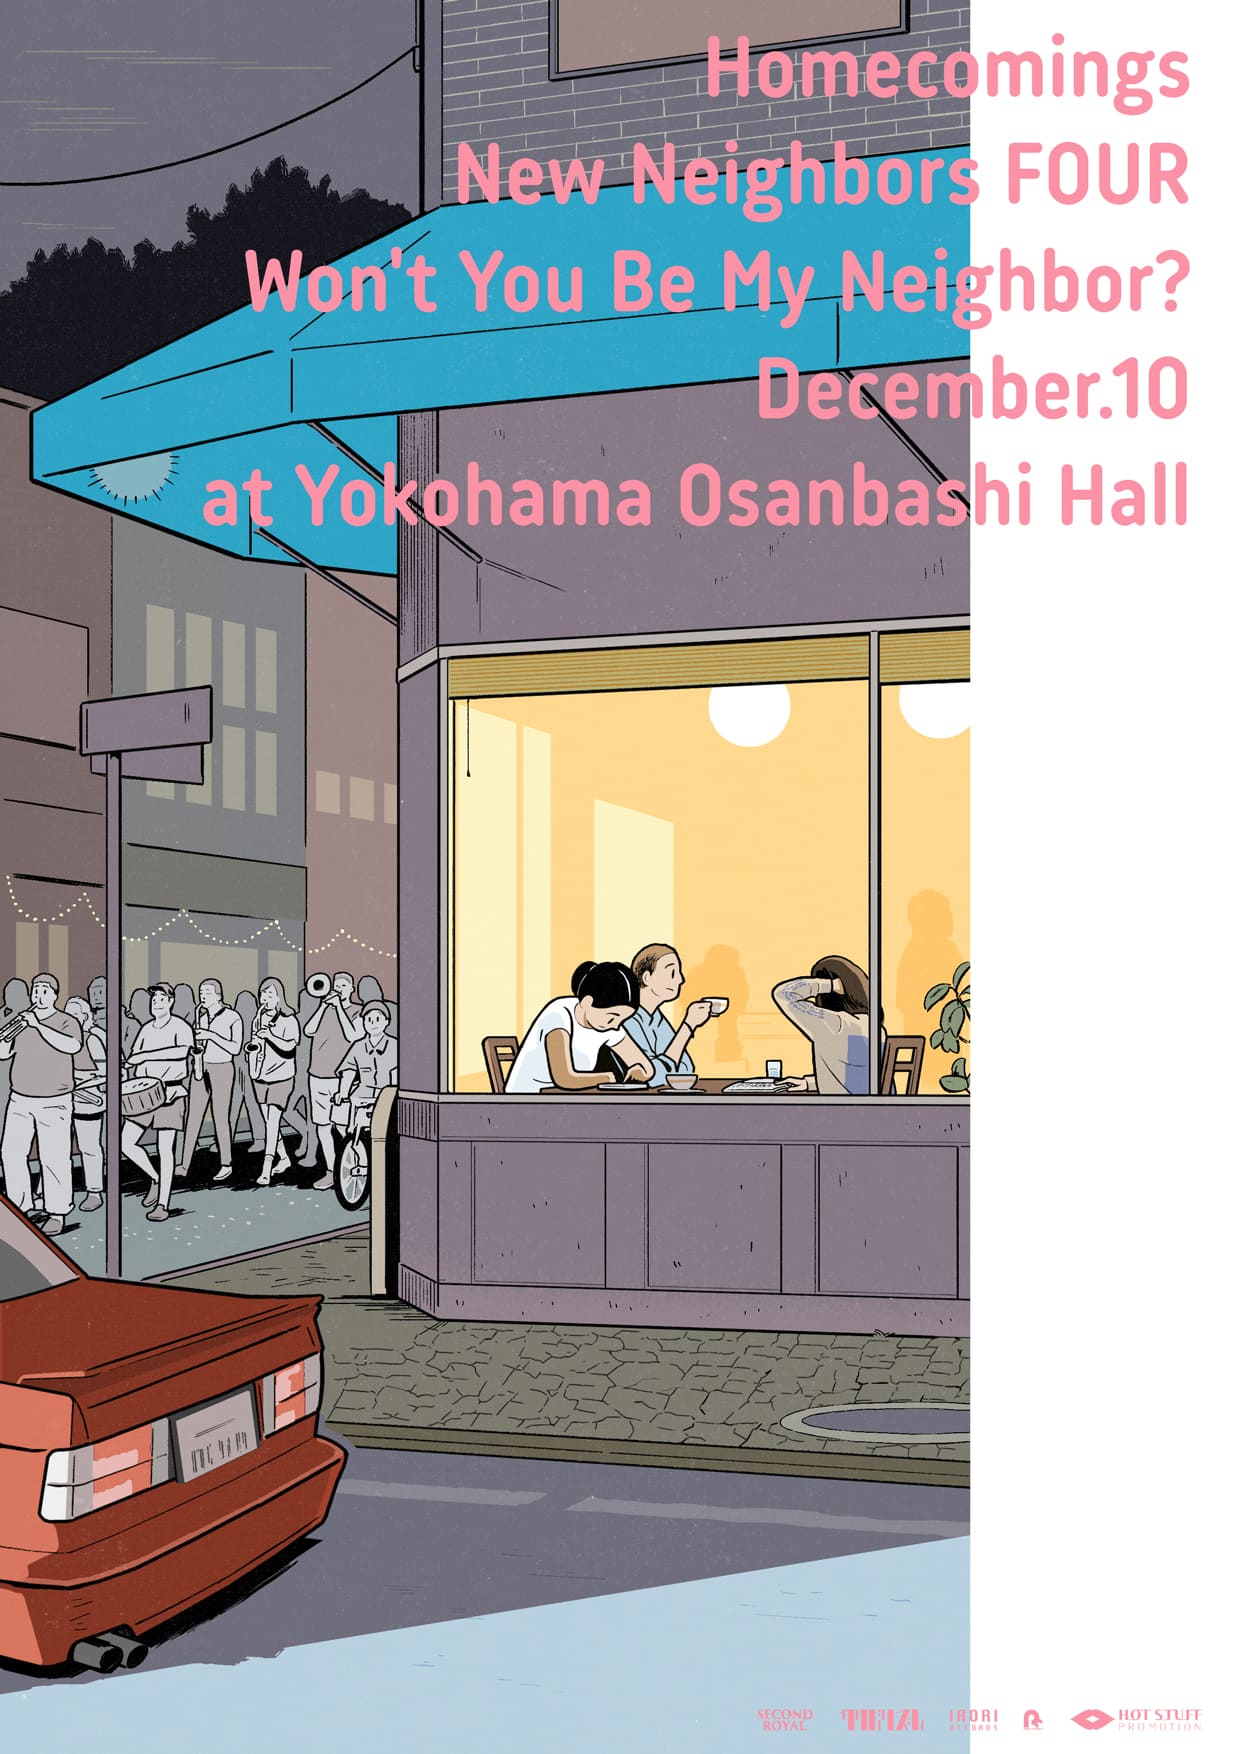 Homecomings New Neighbors FOUR Won't You Be My Neighbor? December.10 Yokohama Osanbashi Hall